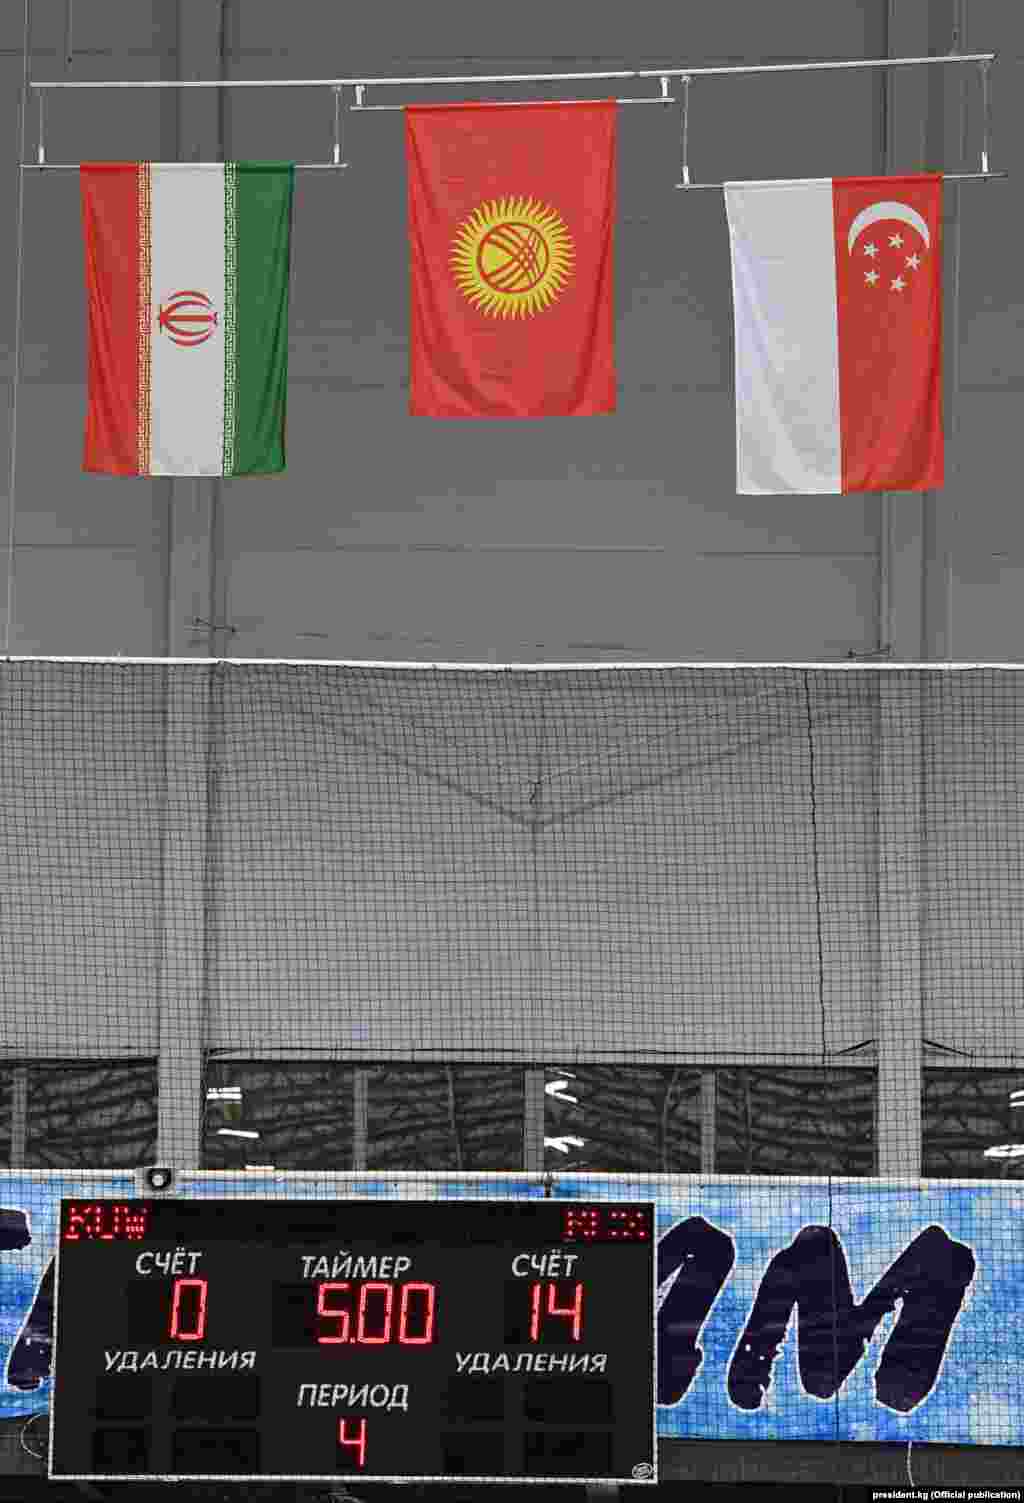 Төрт оюндун жыйынтыгы менен Кыргызстан 12 упай топтоп, биринчи орунду, Иран тогуз упай менен экинчи орунду, Сингапур алты упай менен үчүнчү орунду камсыздашты.